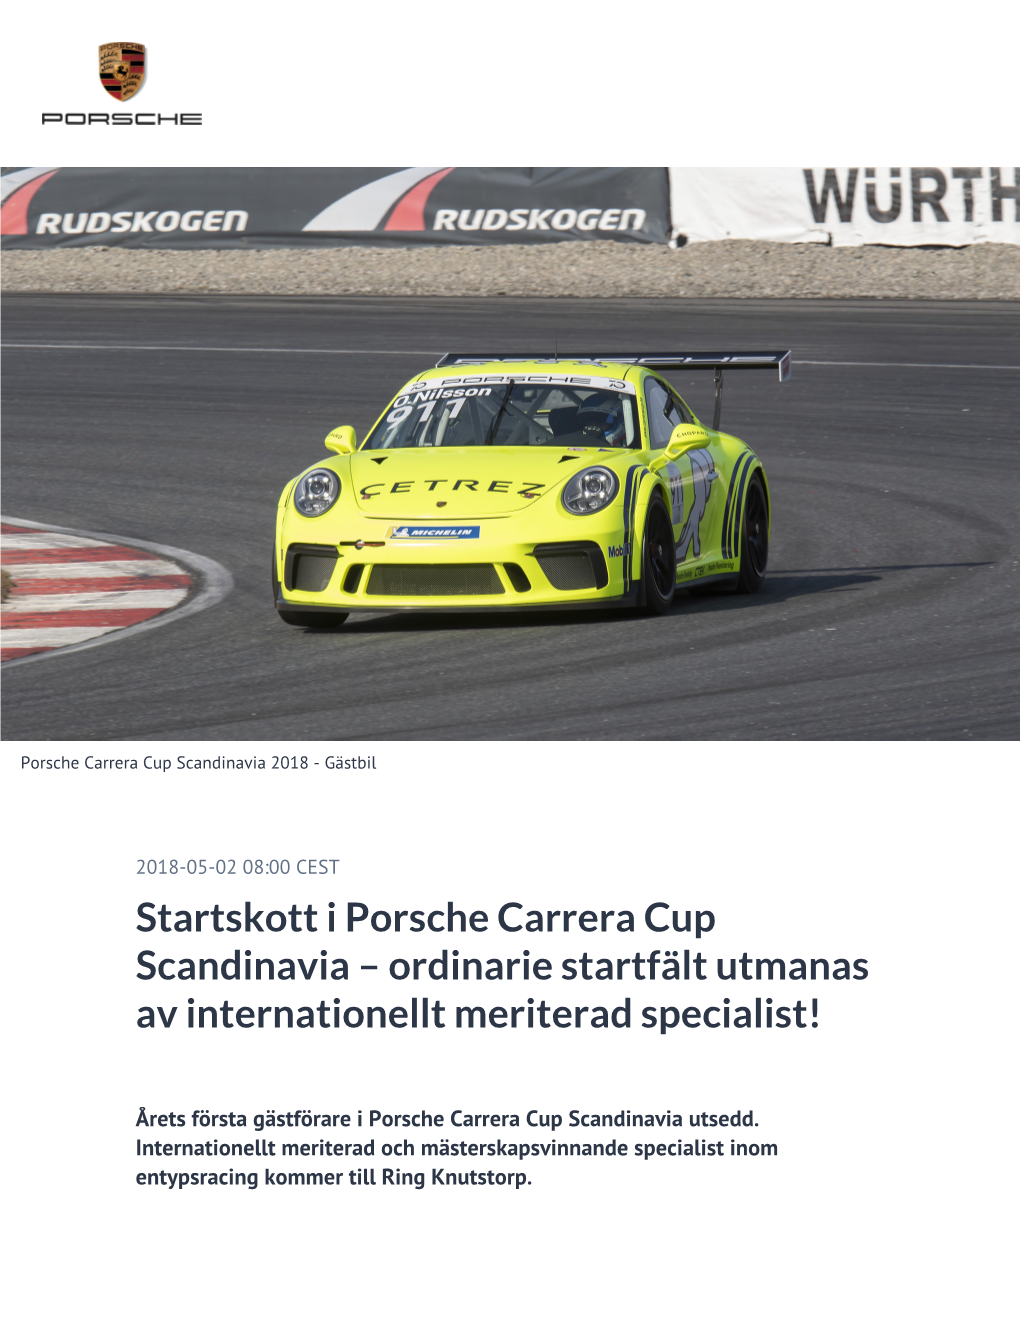 Startskott I Porsche Carrera Cup Scandinavia – Ordinarie Startfält Utmanas Av Internationellt Meriterad Specialist!